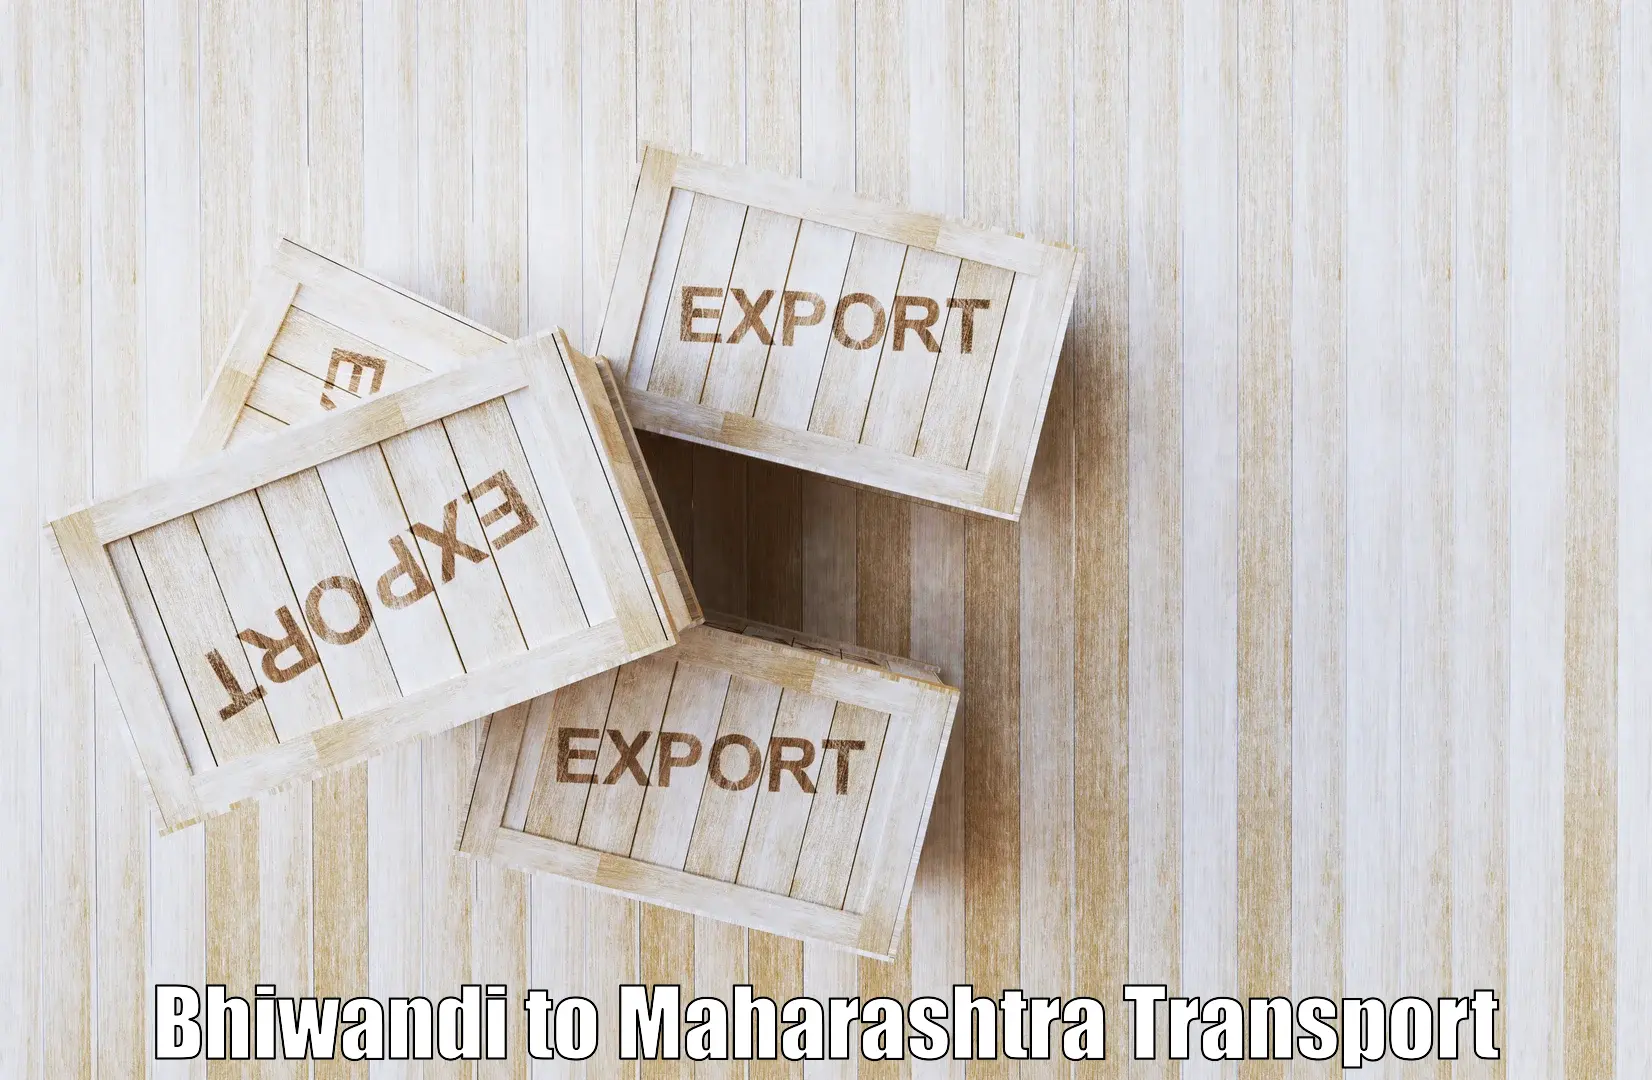 Intercity transport Bhiwandi to Pandharpur